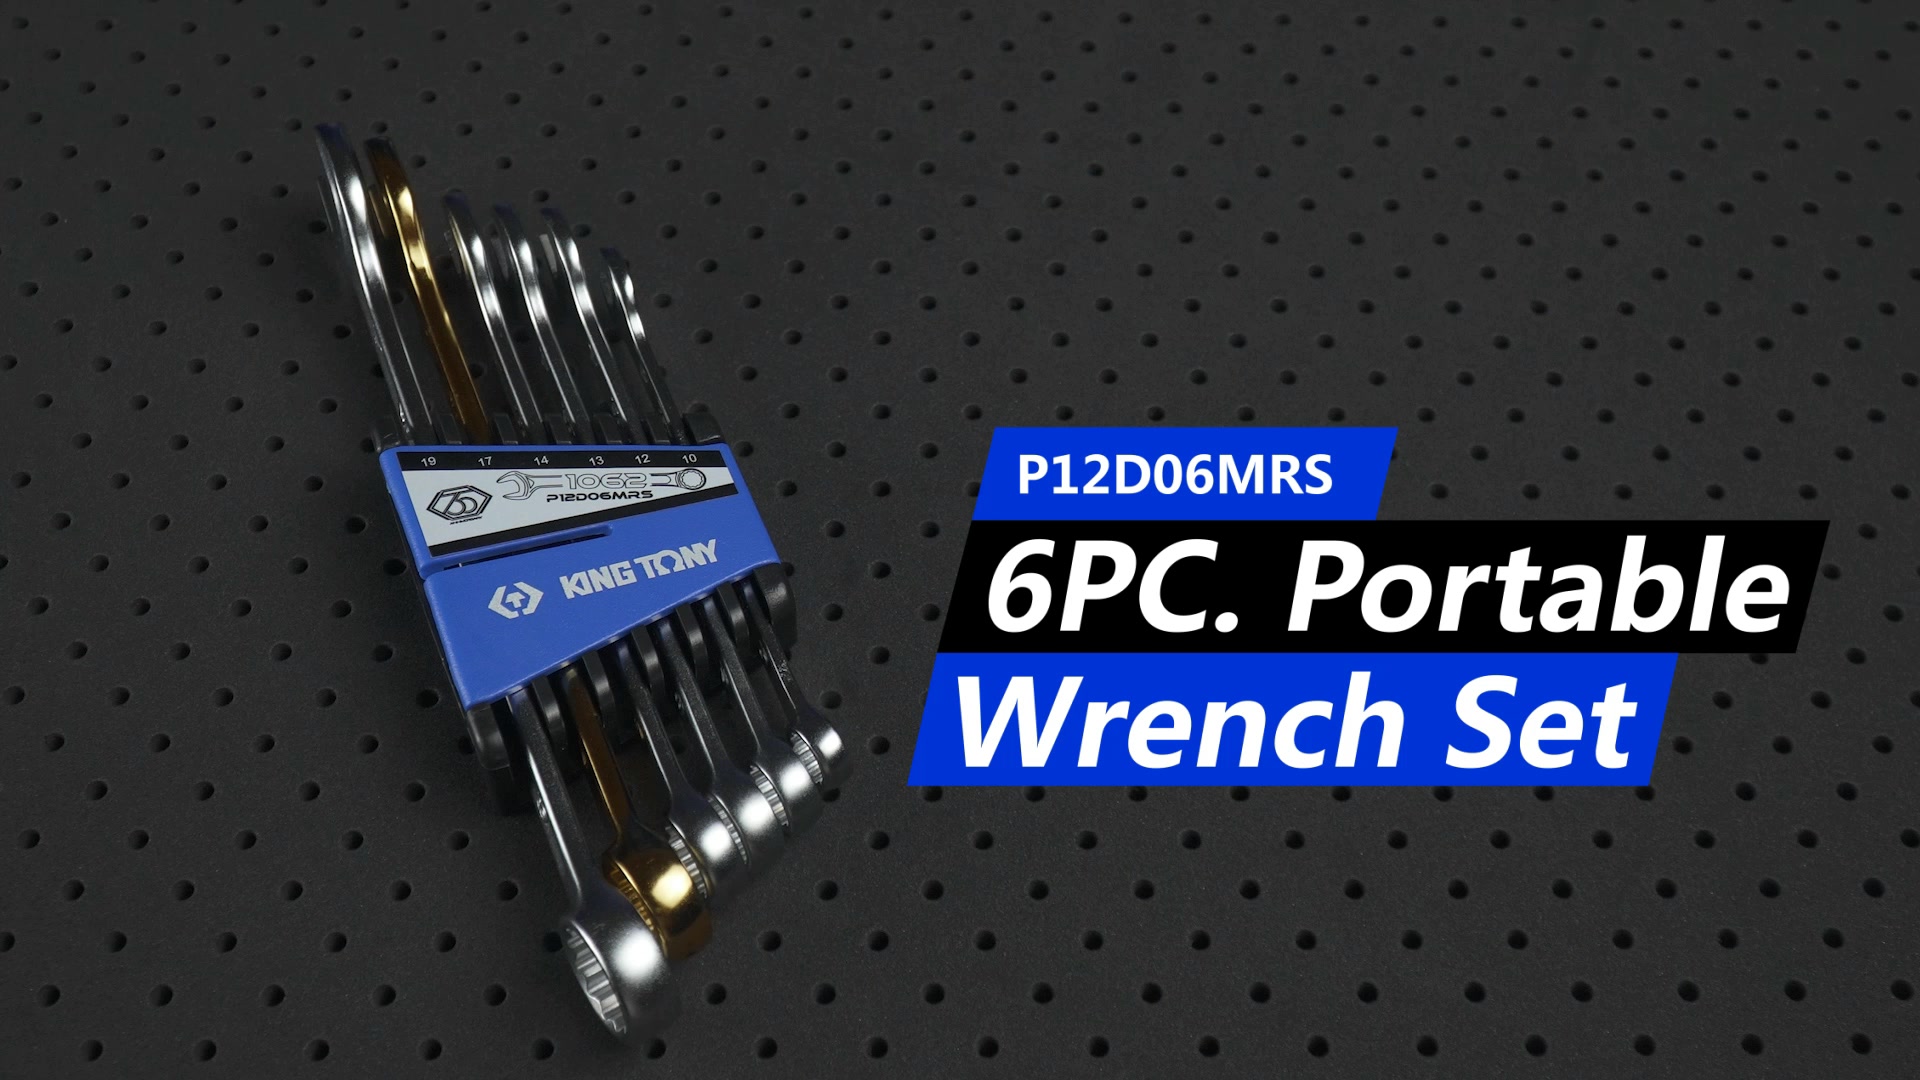 6 PC. Portable Wrench Set-KING TONY-P12D06MRS